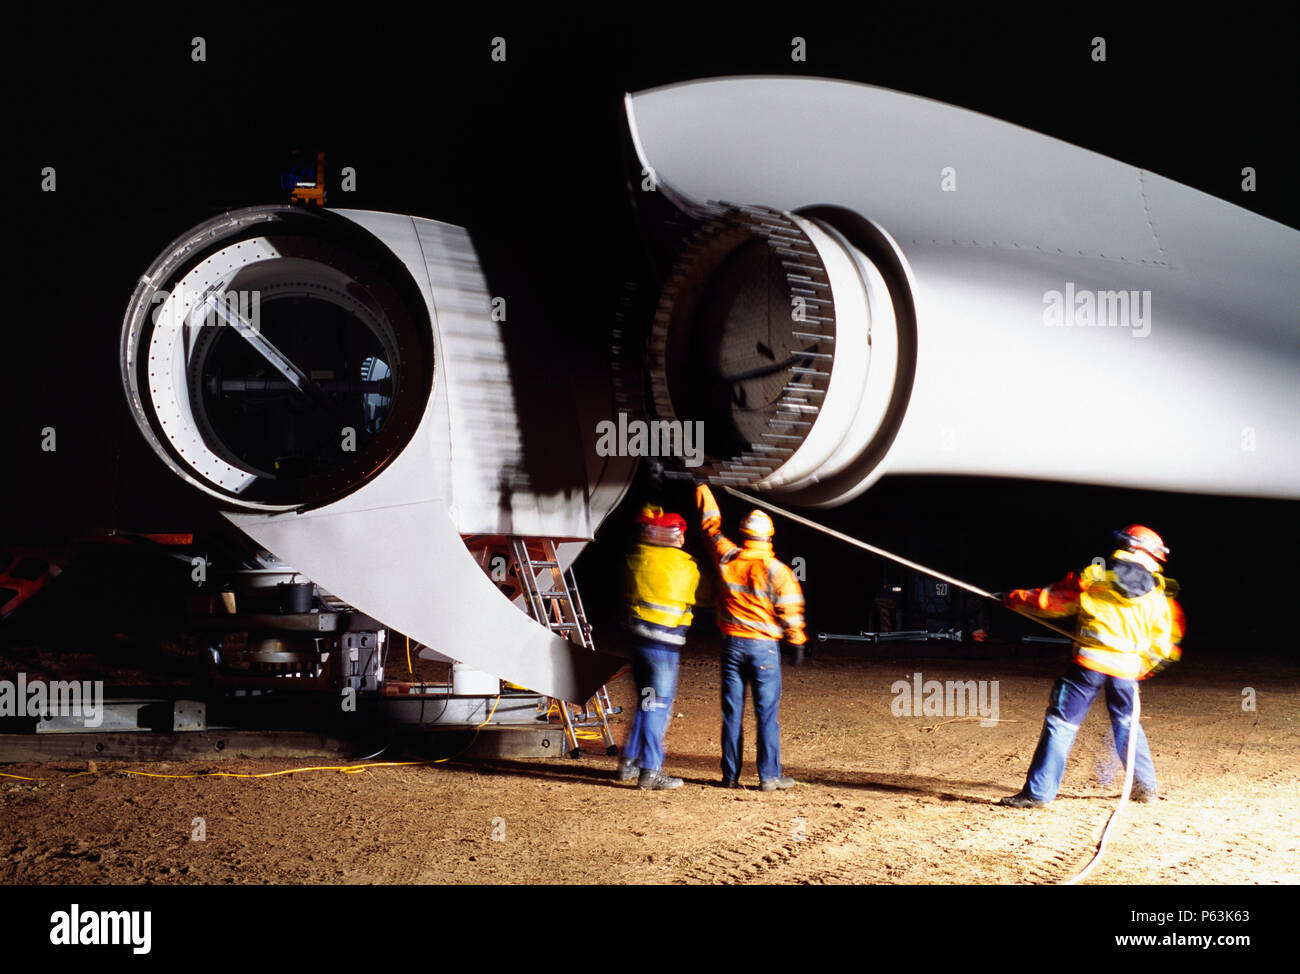 Long expopsure tourné de nuit, puisque trois travailleurs un guide lame dans le moyeu d'une éolienne Enercon géant. Worksop Royaume-uni. Décembre 2008. Banque D'Images